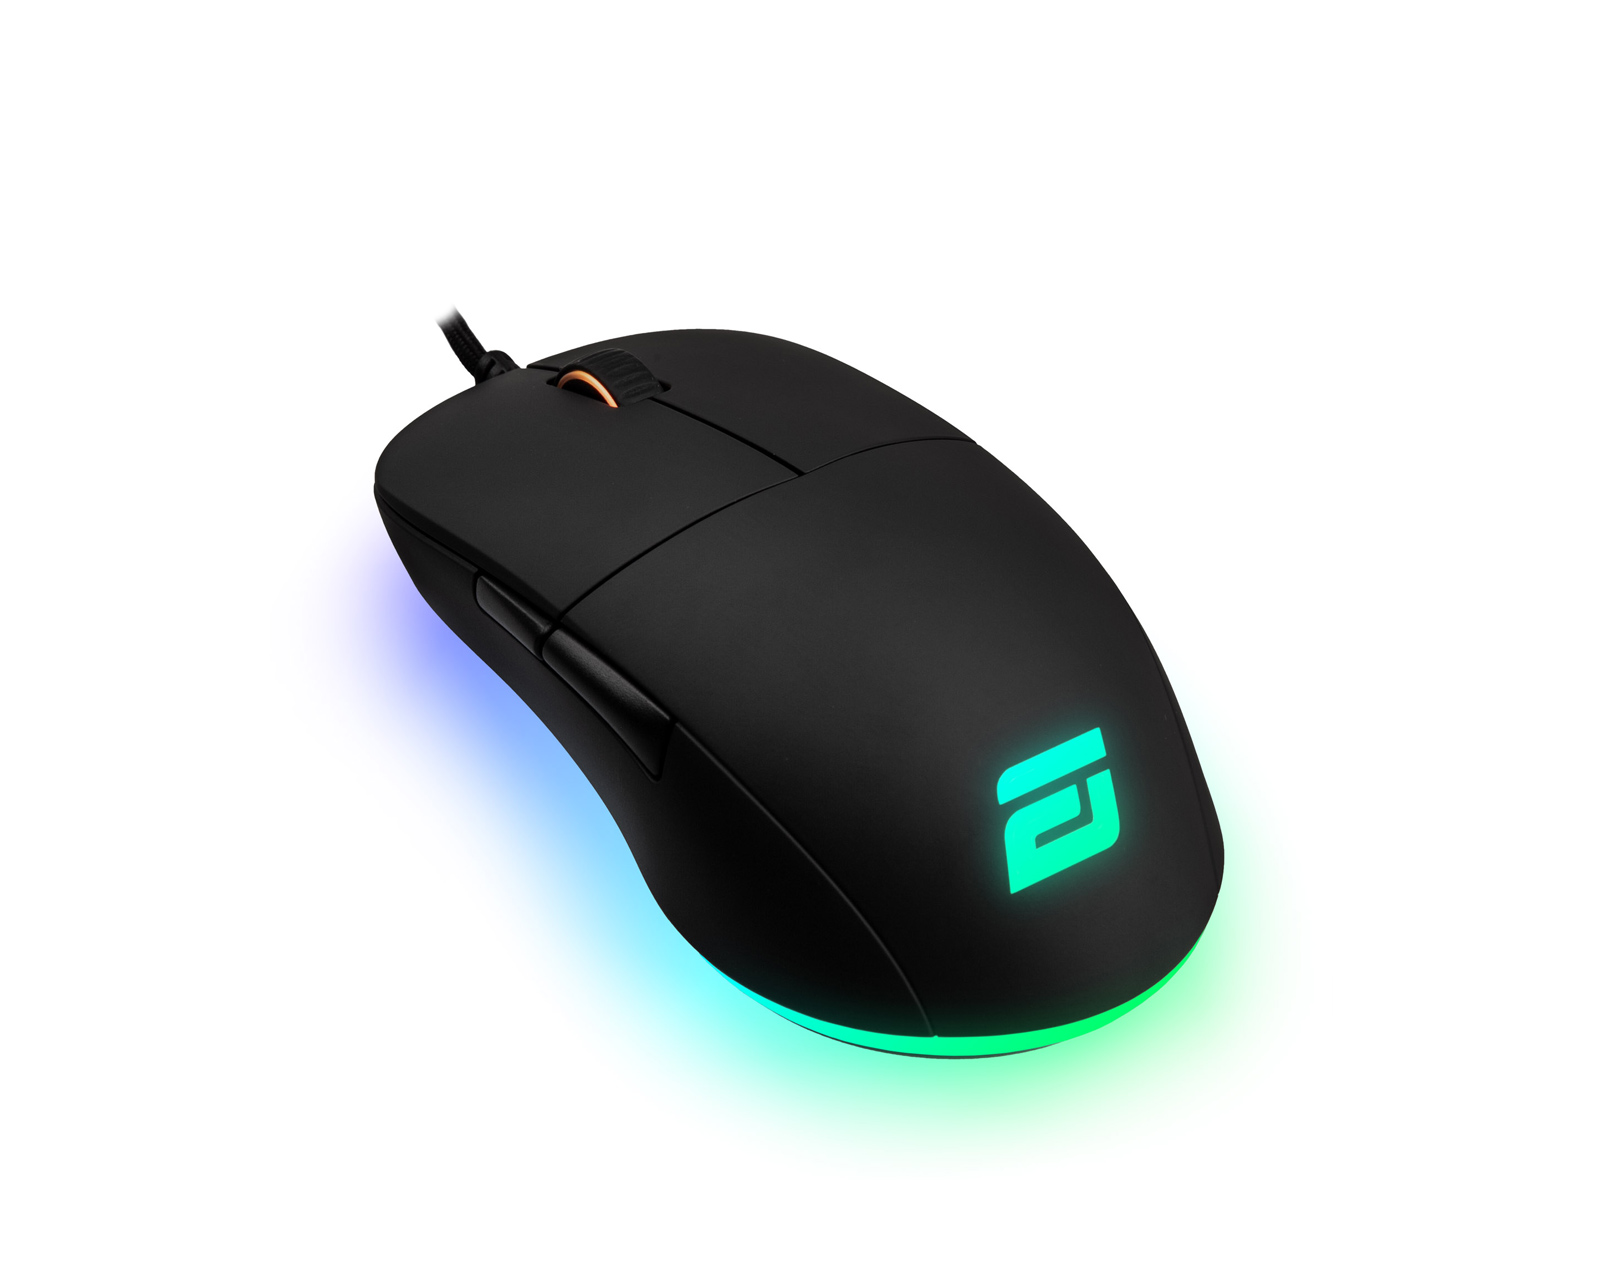 Buy Endgame Gear Xm1 Rgb Gaming Mouse Black At Us Maxgaming Com